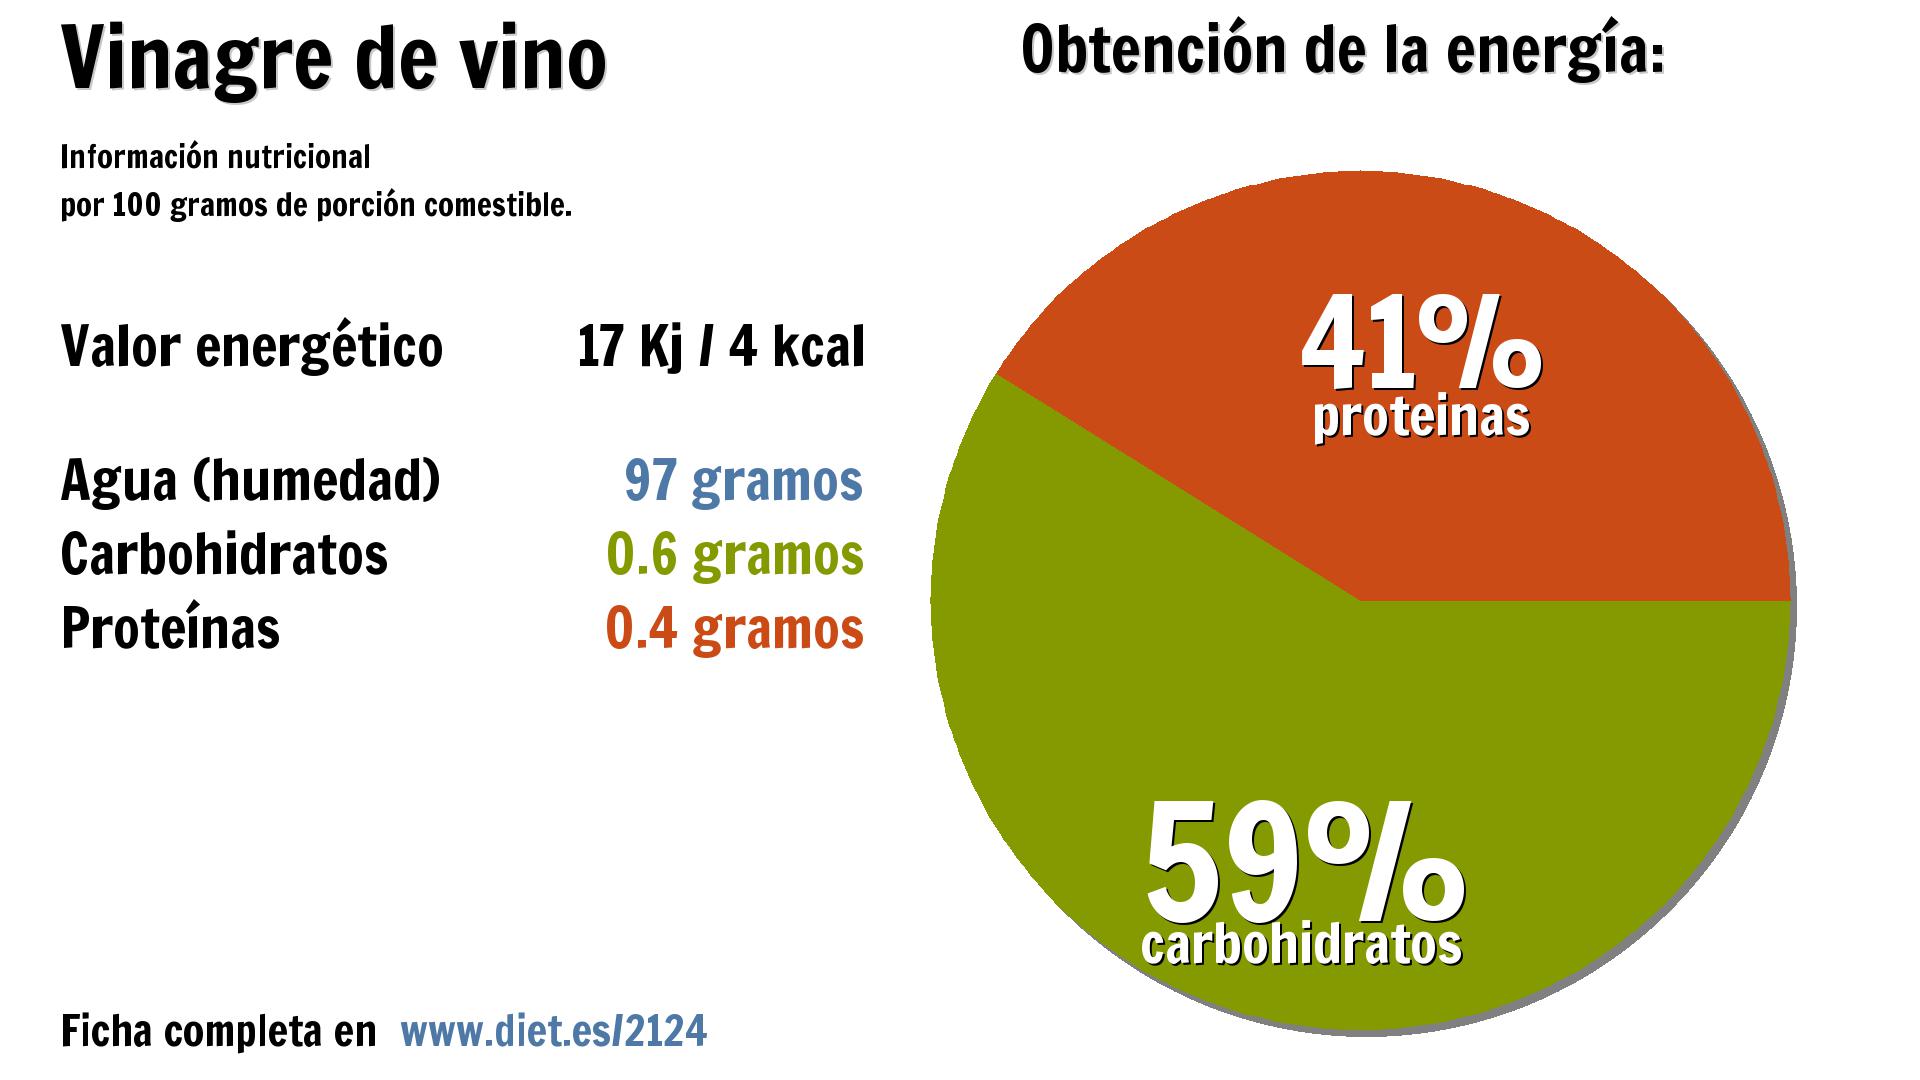 Vinagre de vino: agua 97 g., energía 17 Kj y carbohidratos 1 g.